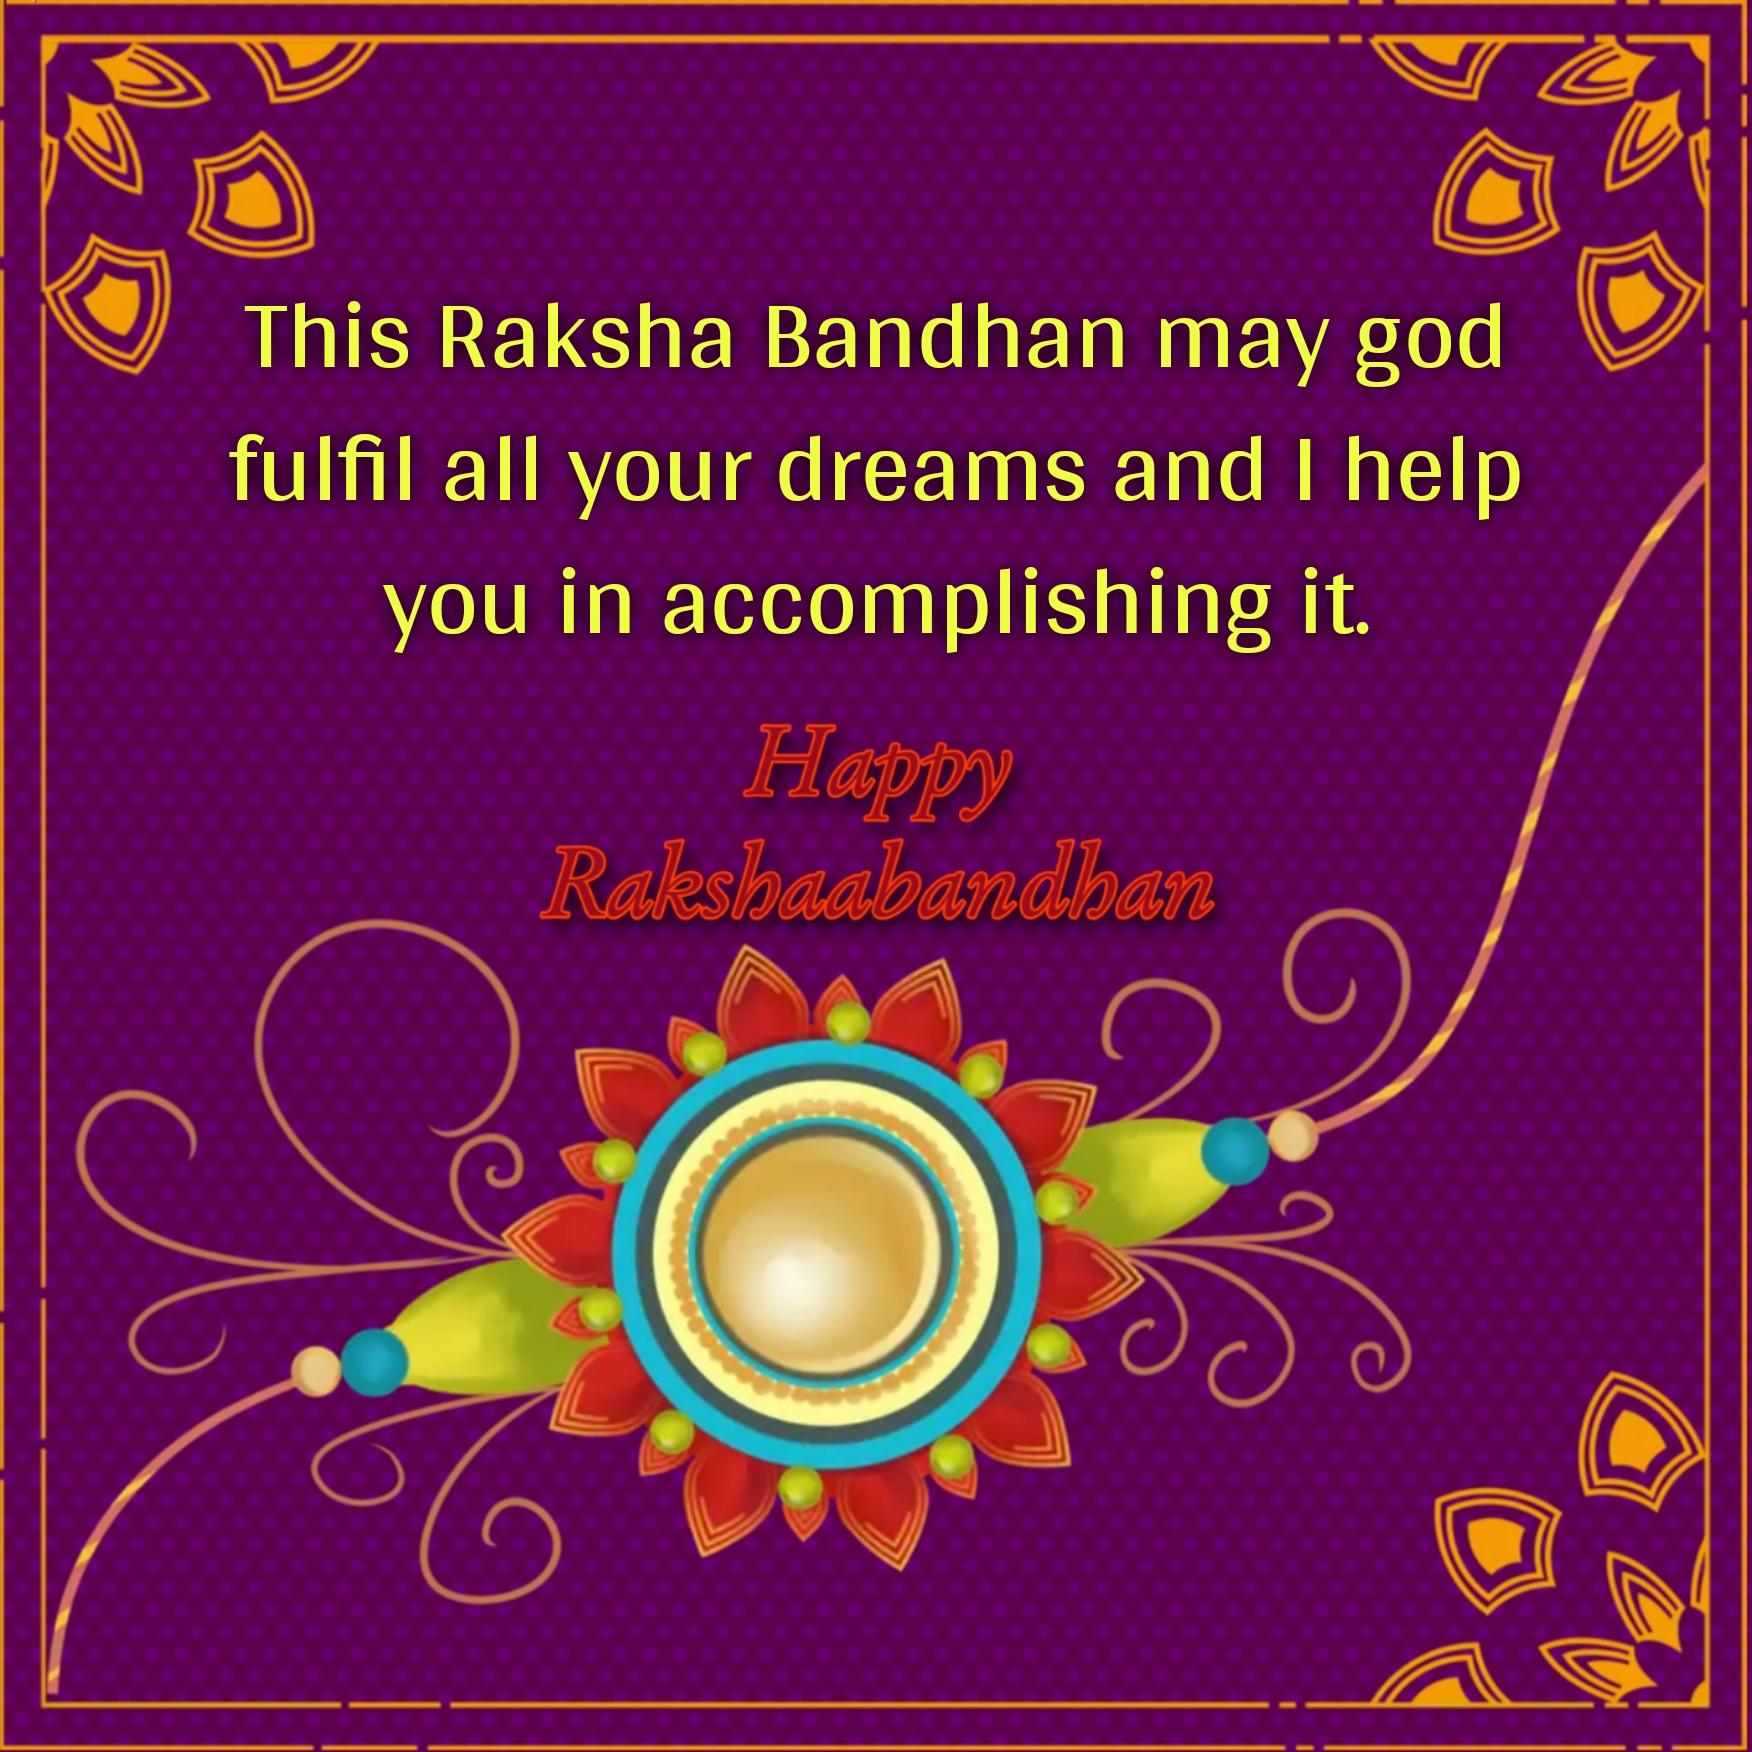 This Raksha Bandhan may god fulfil all your dreams